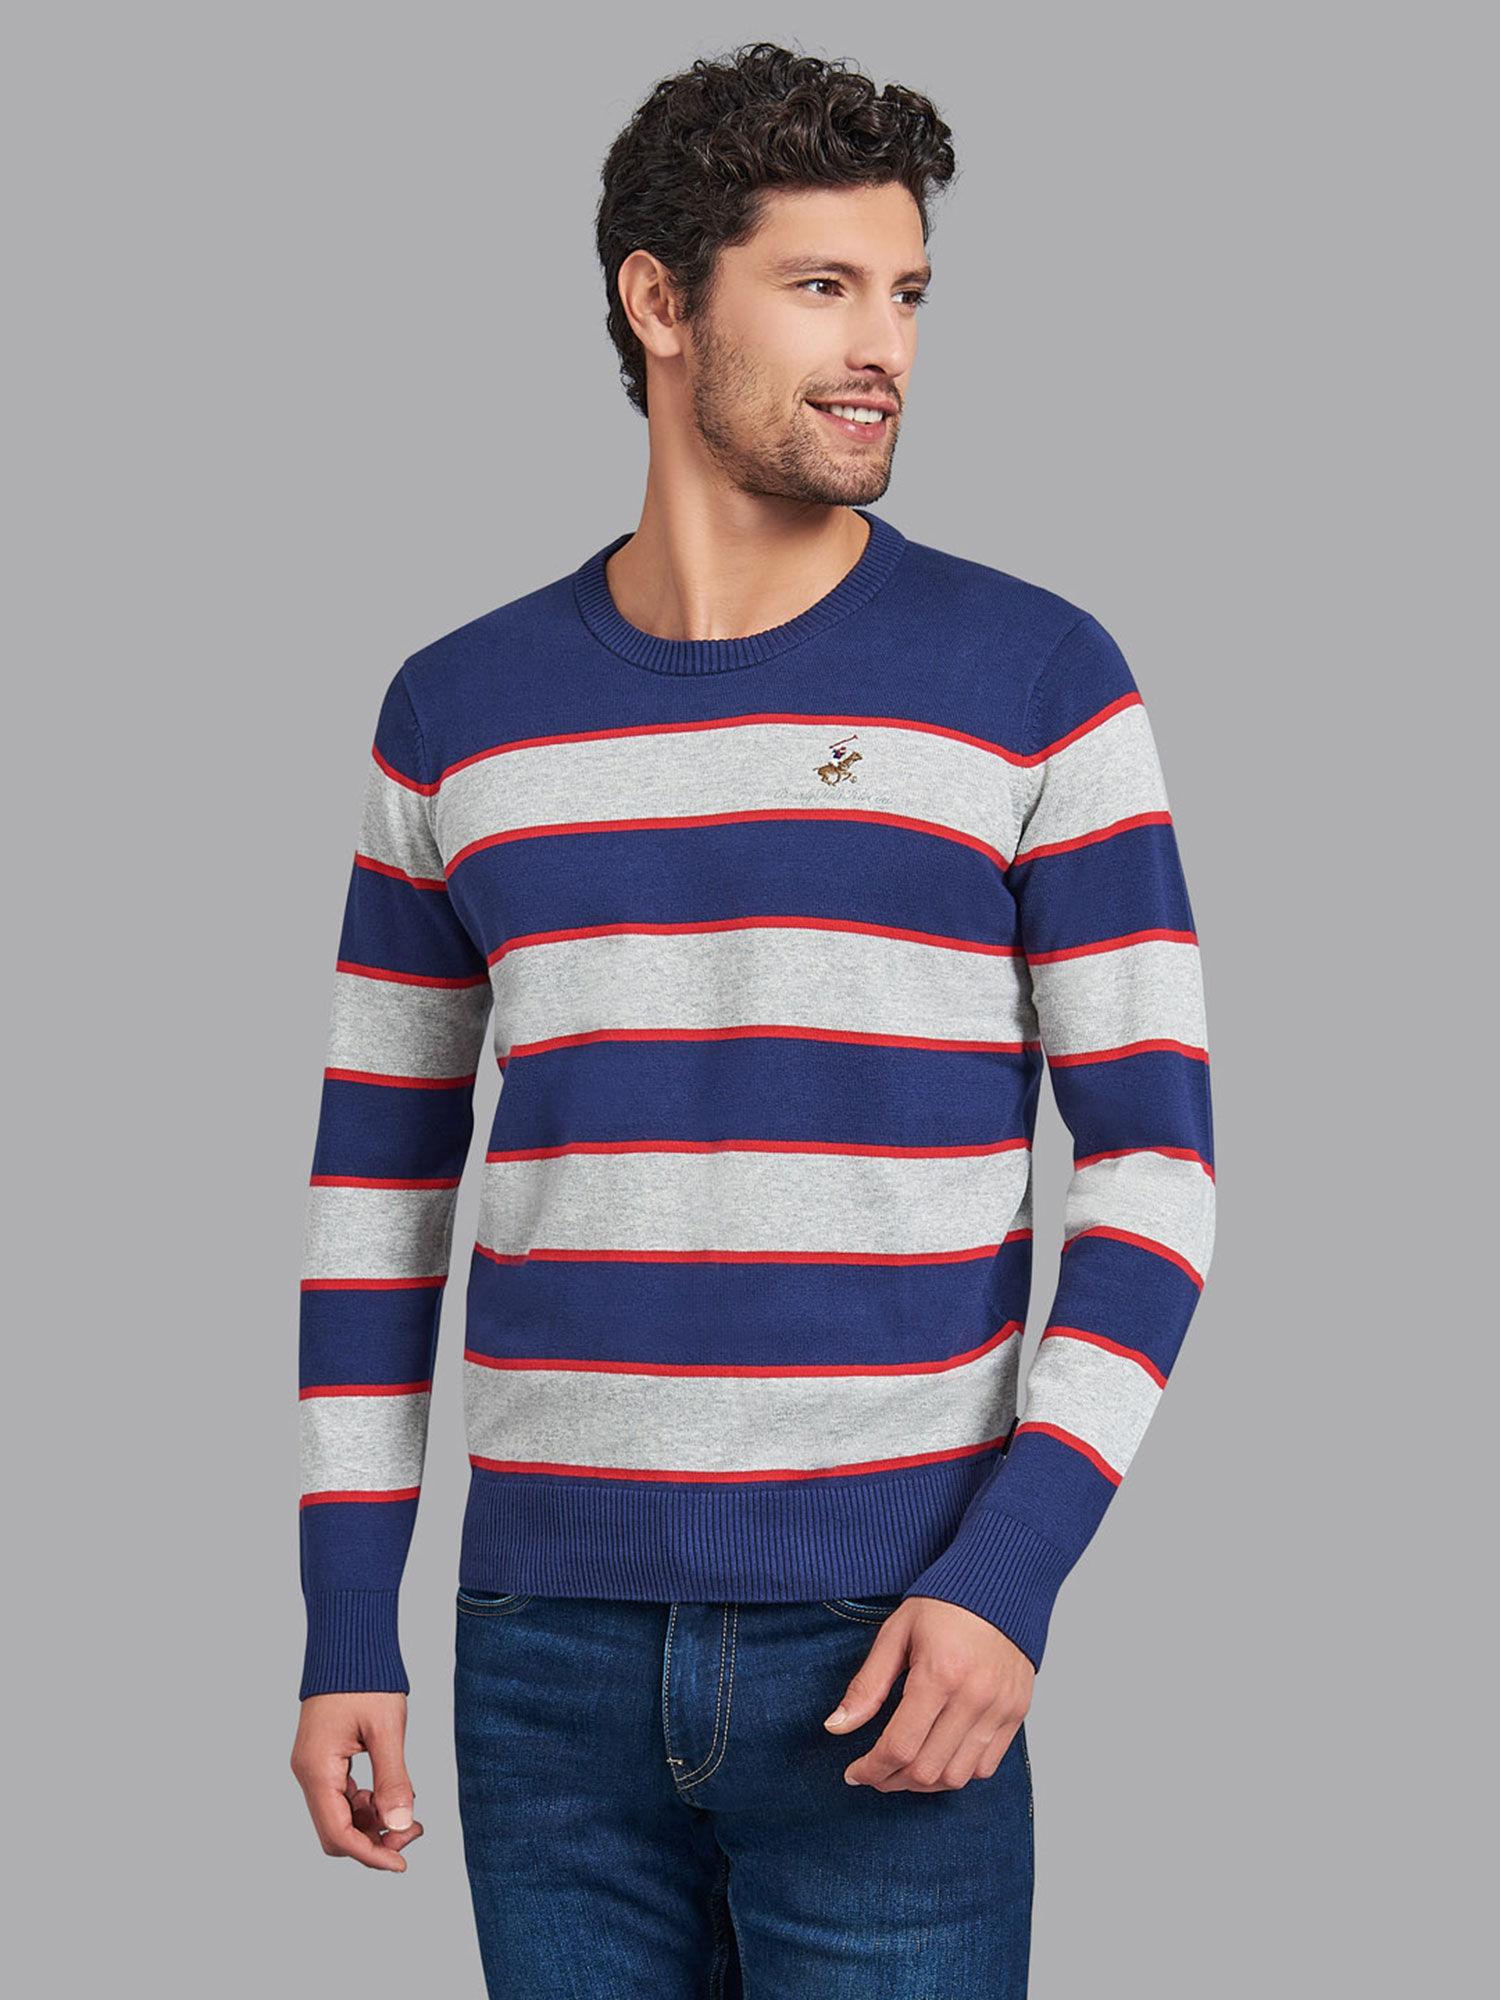 sportin-it-yarn-dye-stripe-sweater